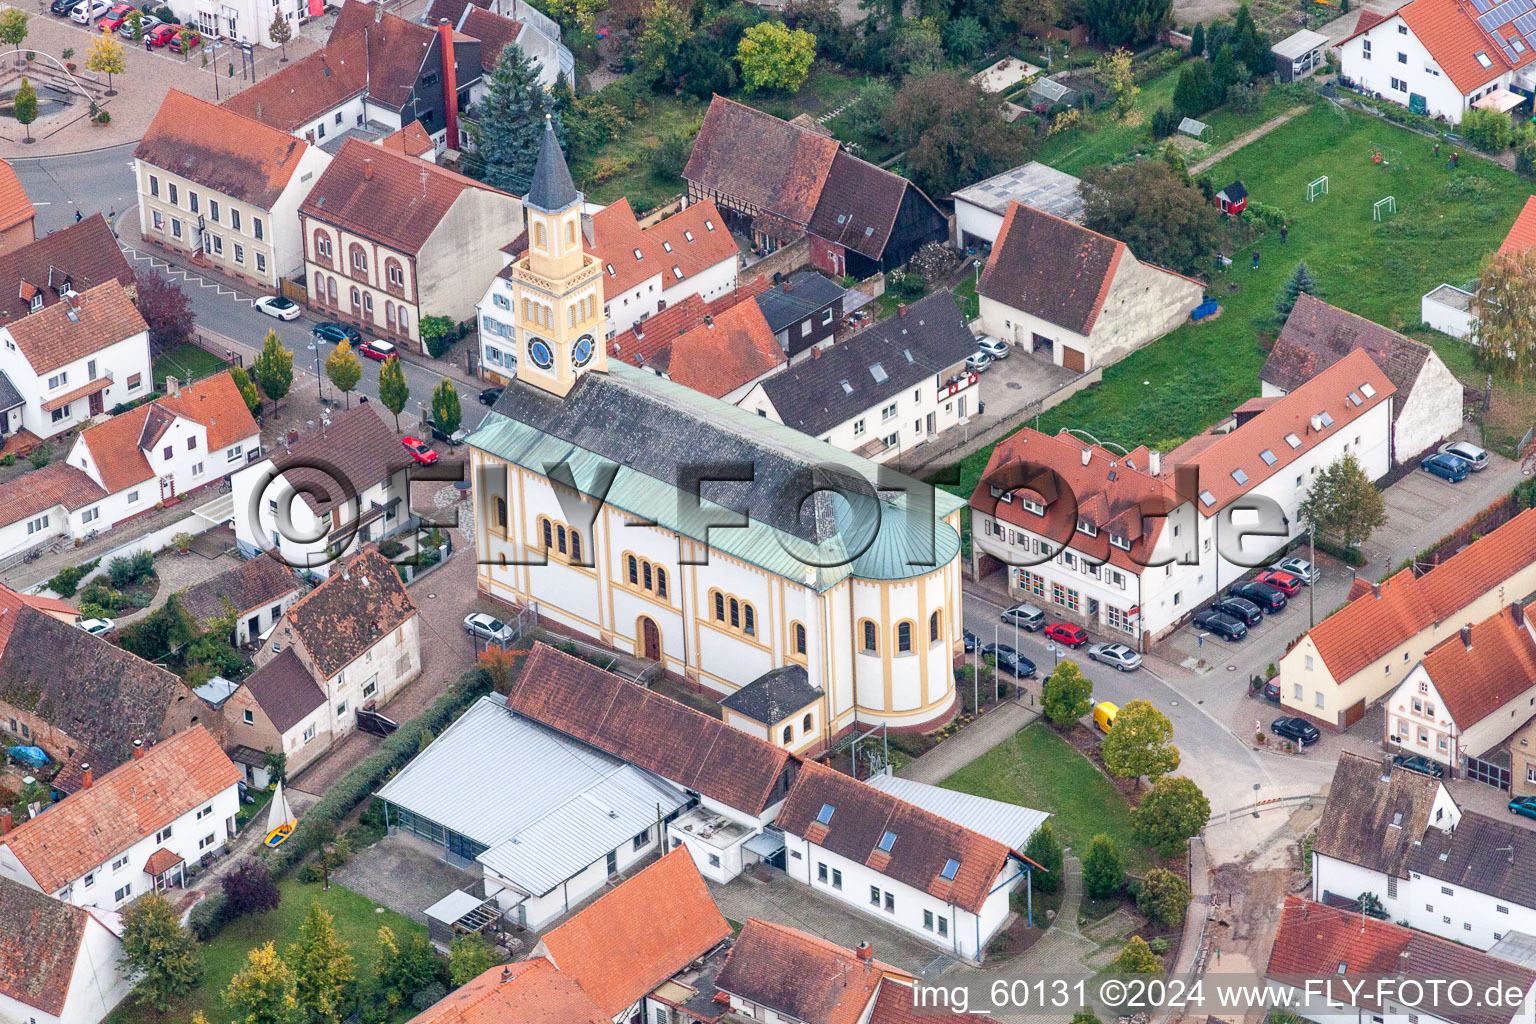 Vue oblique de Bâtiment d'église au centre du village à Lingenfeld dans le département Rhénanie-Palatinat, Allemagne